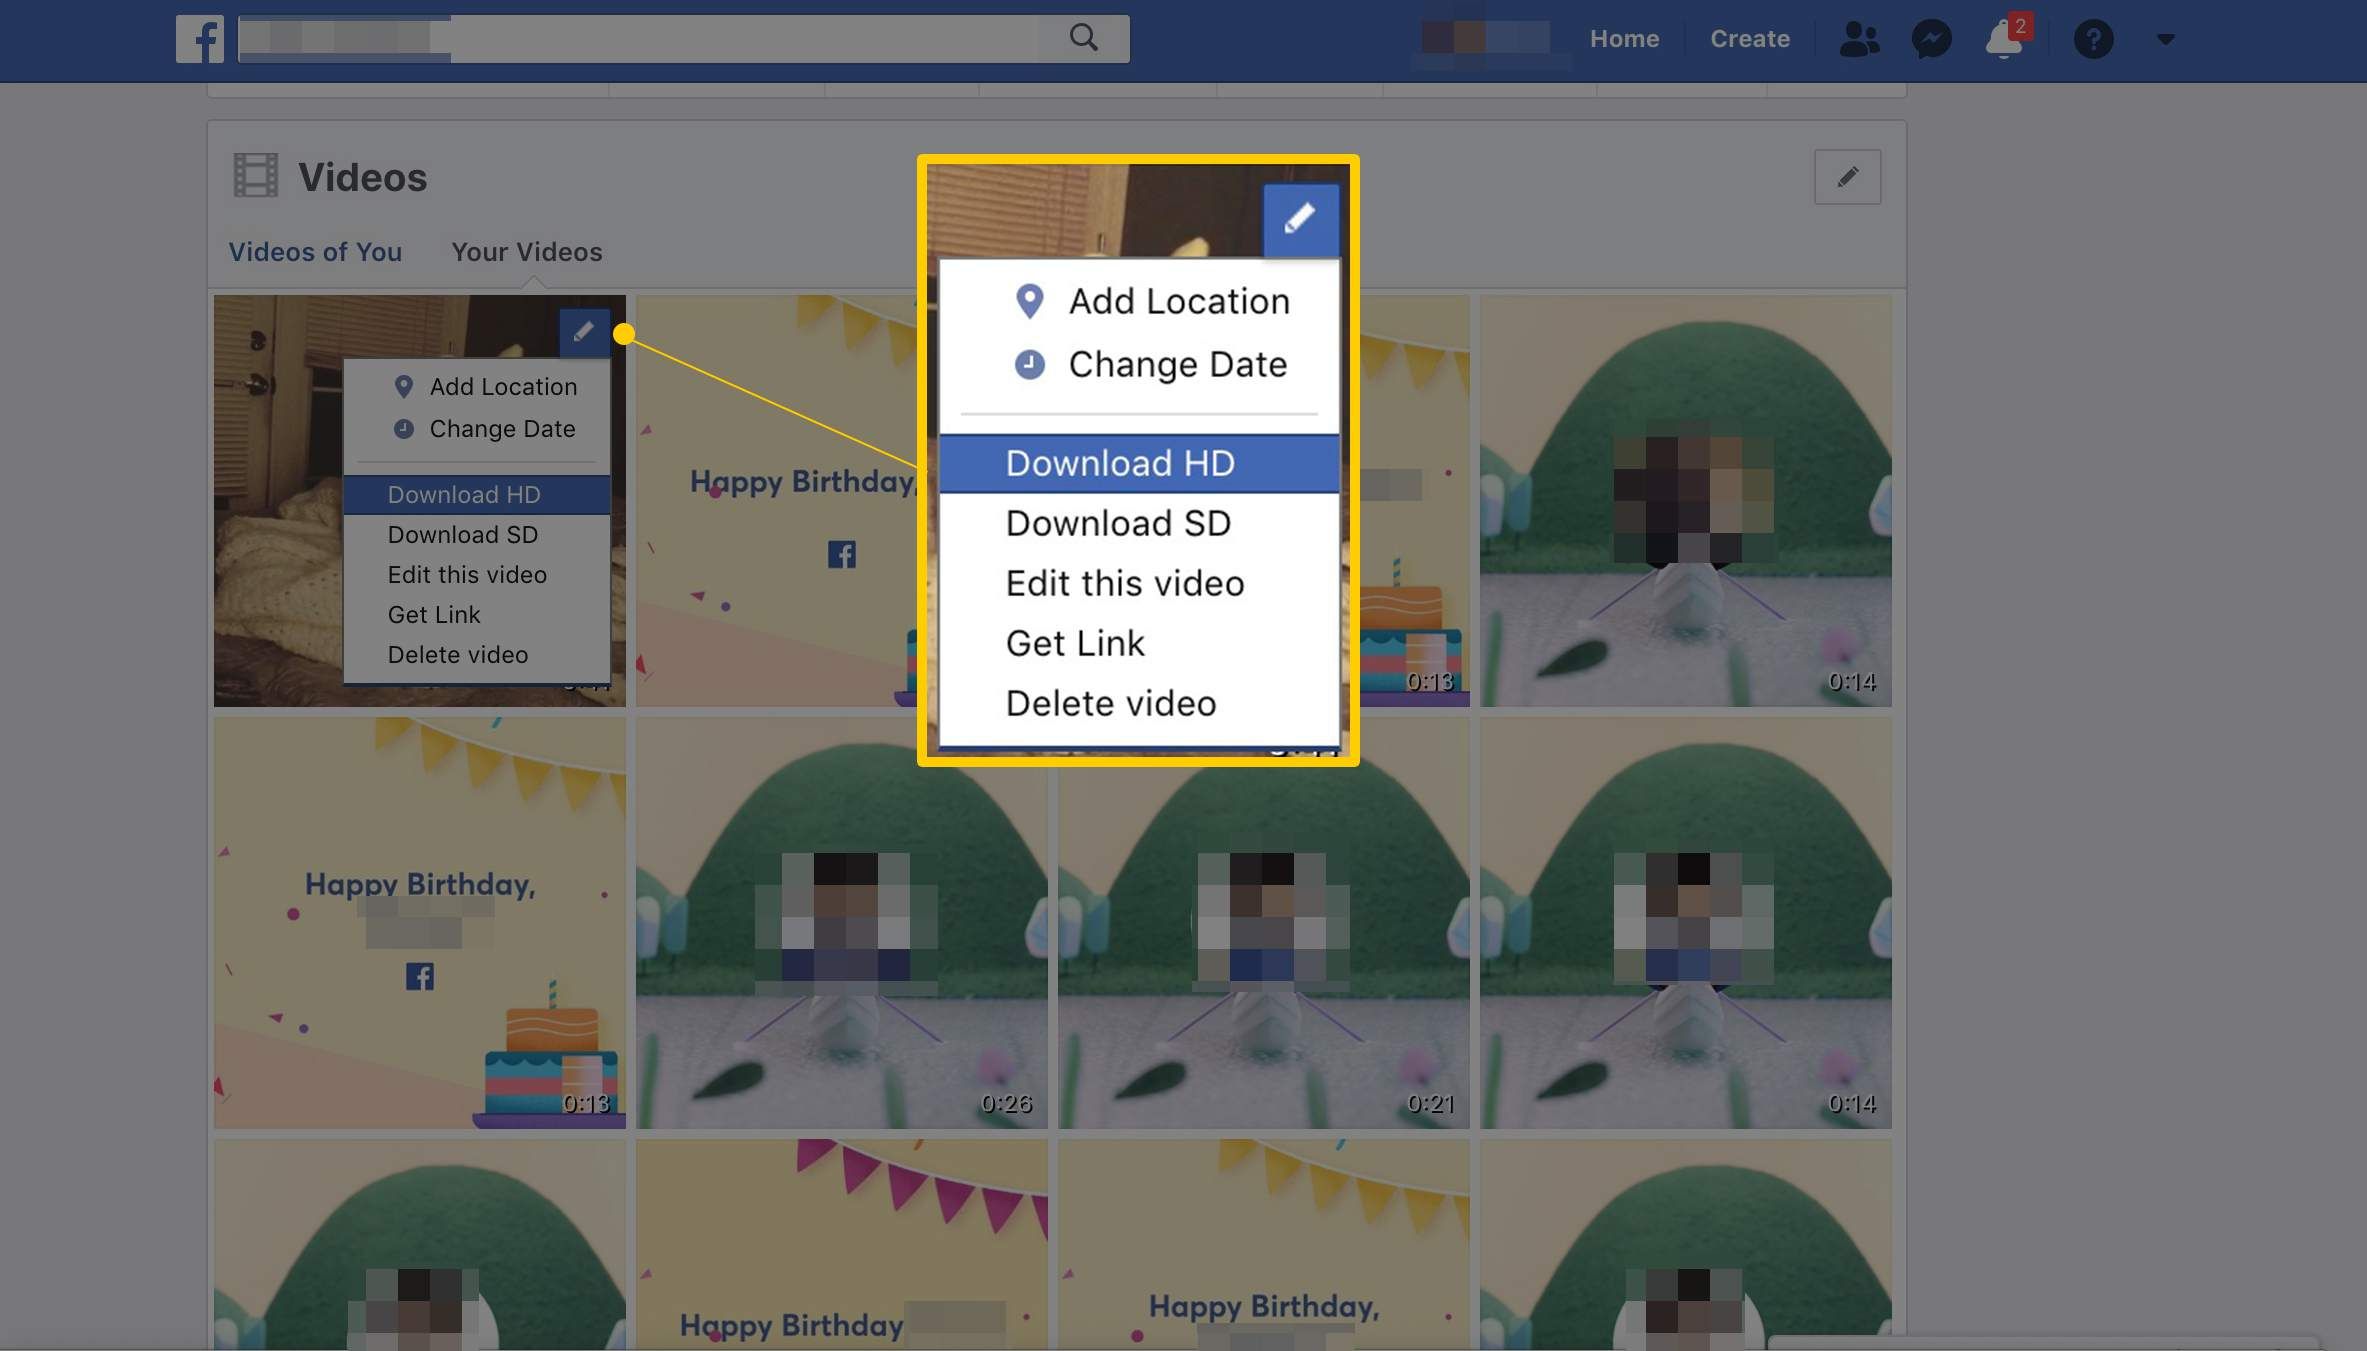 Параметры загрузки на странице «Ваши видео» в Facebook, включая HD и SD